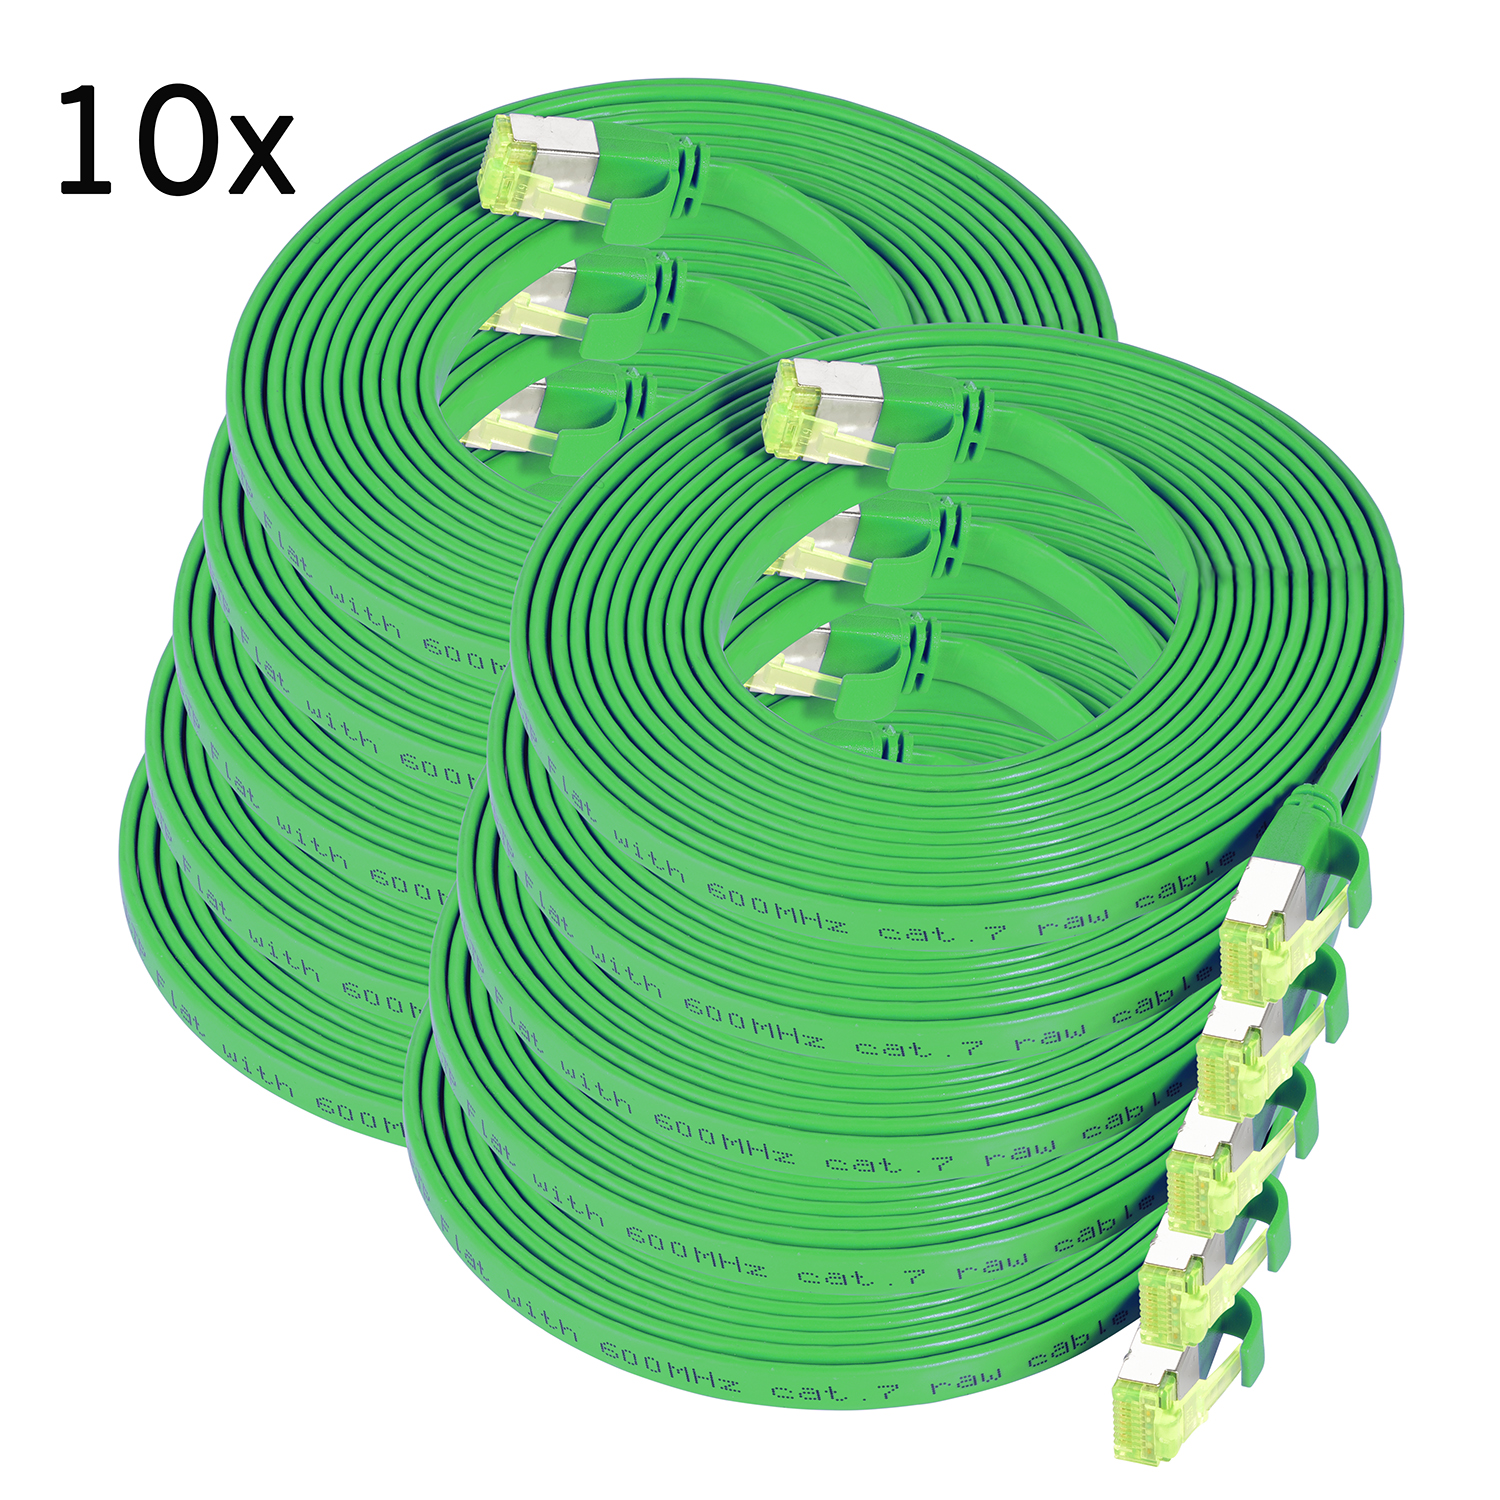 TPFNET 10er Pack 1m Patchkabel GBit, U/FTP 10 1 m Flachkabel grün, Netzwerkkabel, 